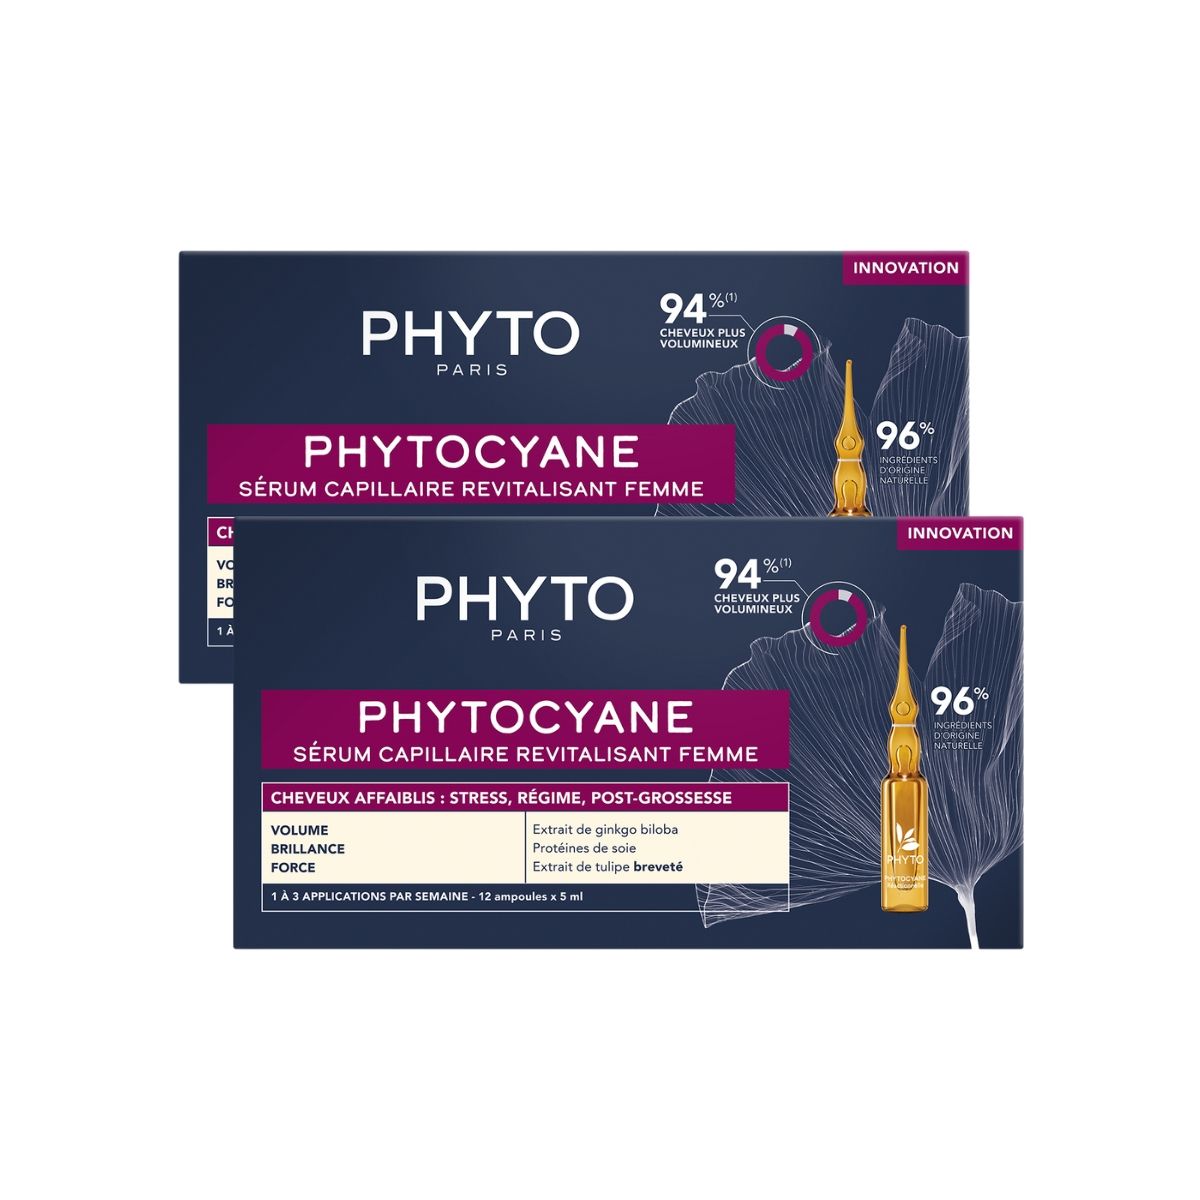 PHYTOCYANE - Revitalizing Hair Serum For Women Duo